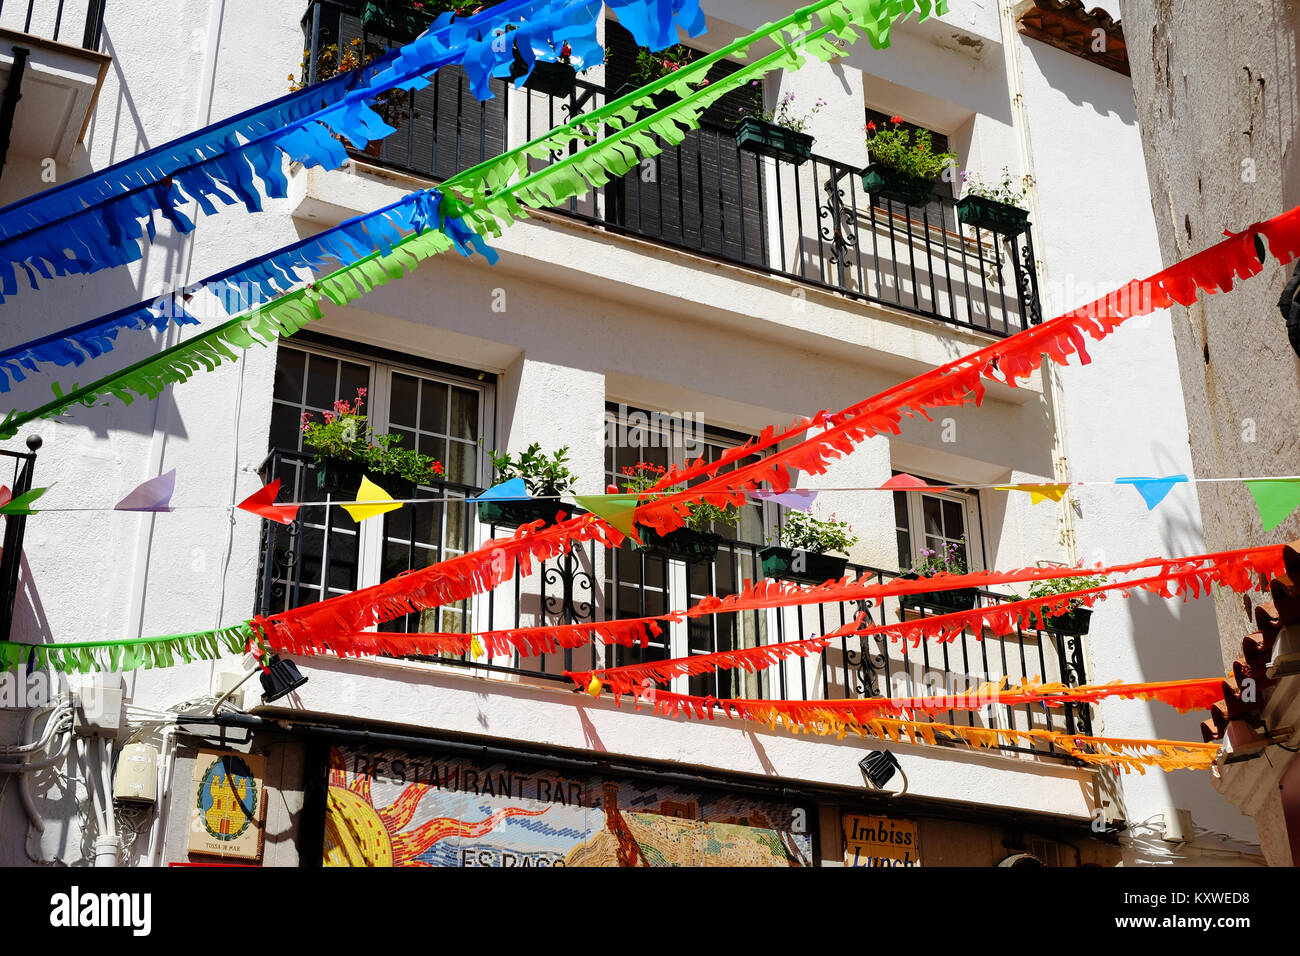 Häuser und Straße Dekorationen für Mitte Sommer Eva, St. Johns eve traditionelle Feiern in Tossa de Mar, Katalonien, Spanien. Stockfoto